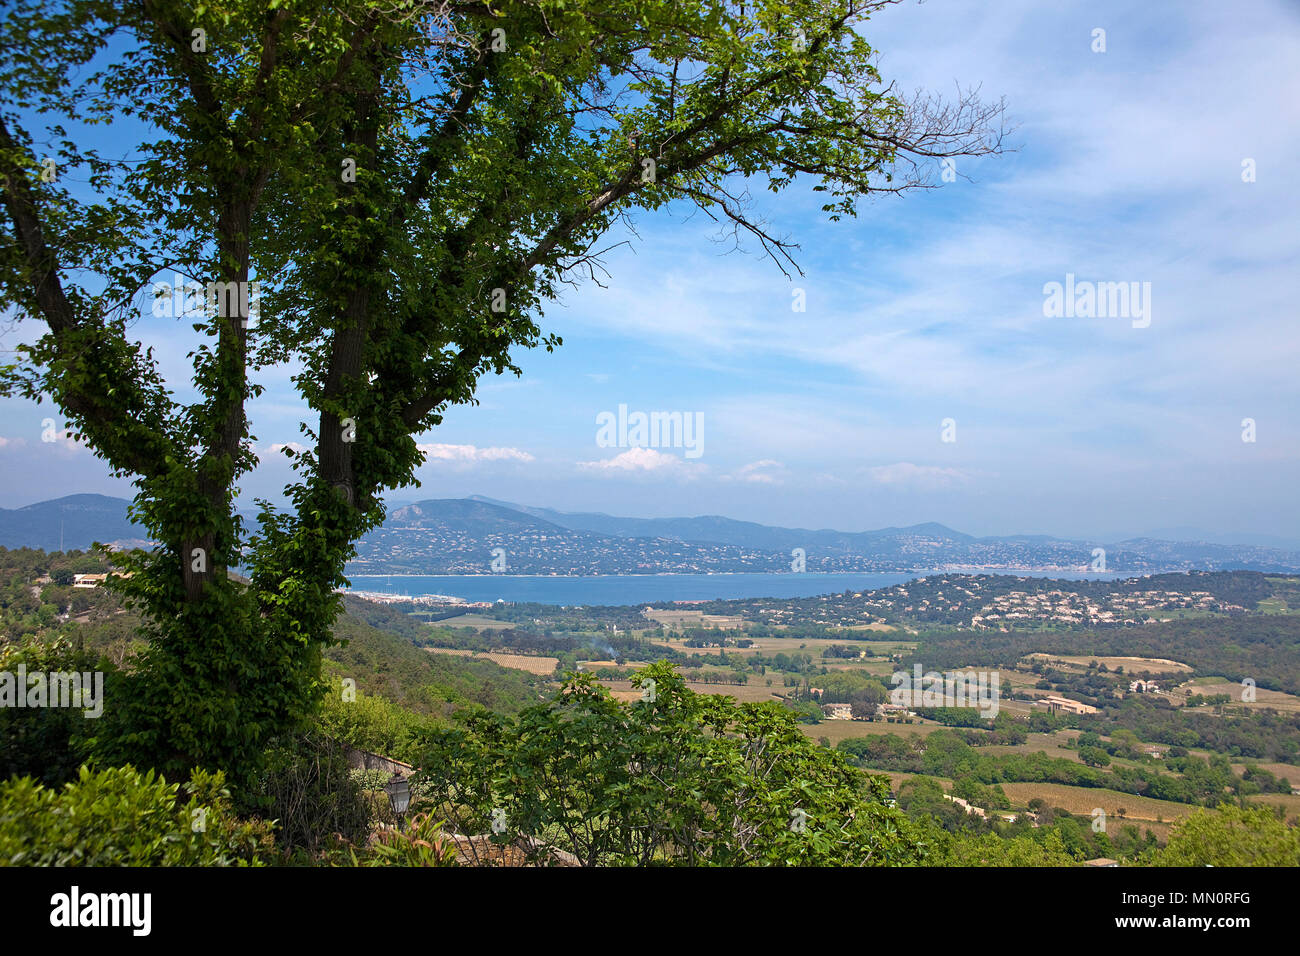 View from village Gassin on Gulf of Saint-Tropez, Cote d'Azur, Département Var, Provence-Alpes-Côte d’Azur, South France, France, Europe Stock Photo